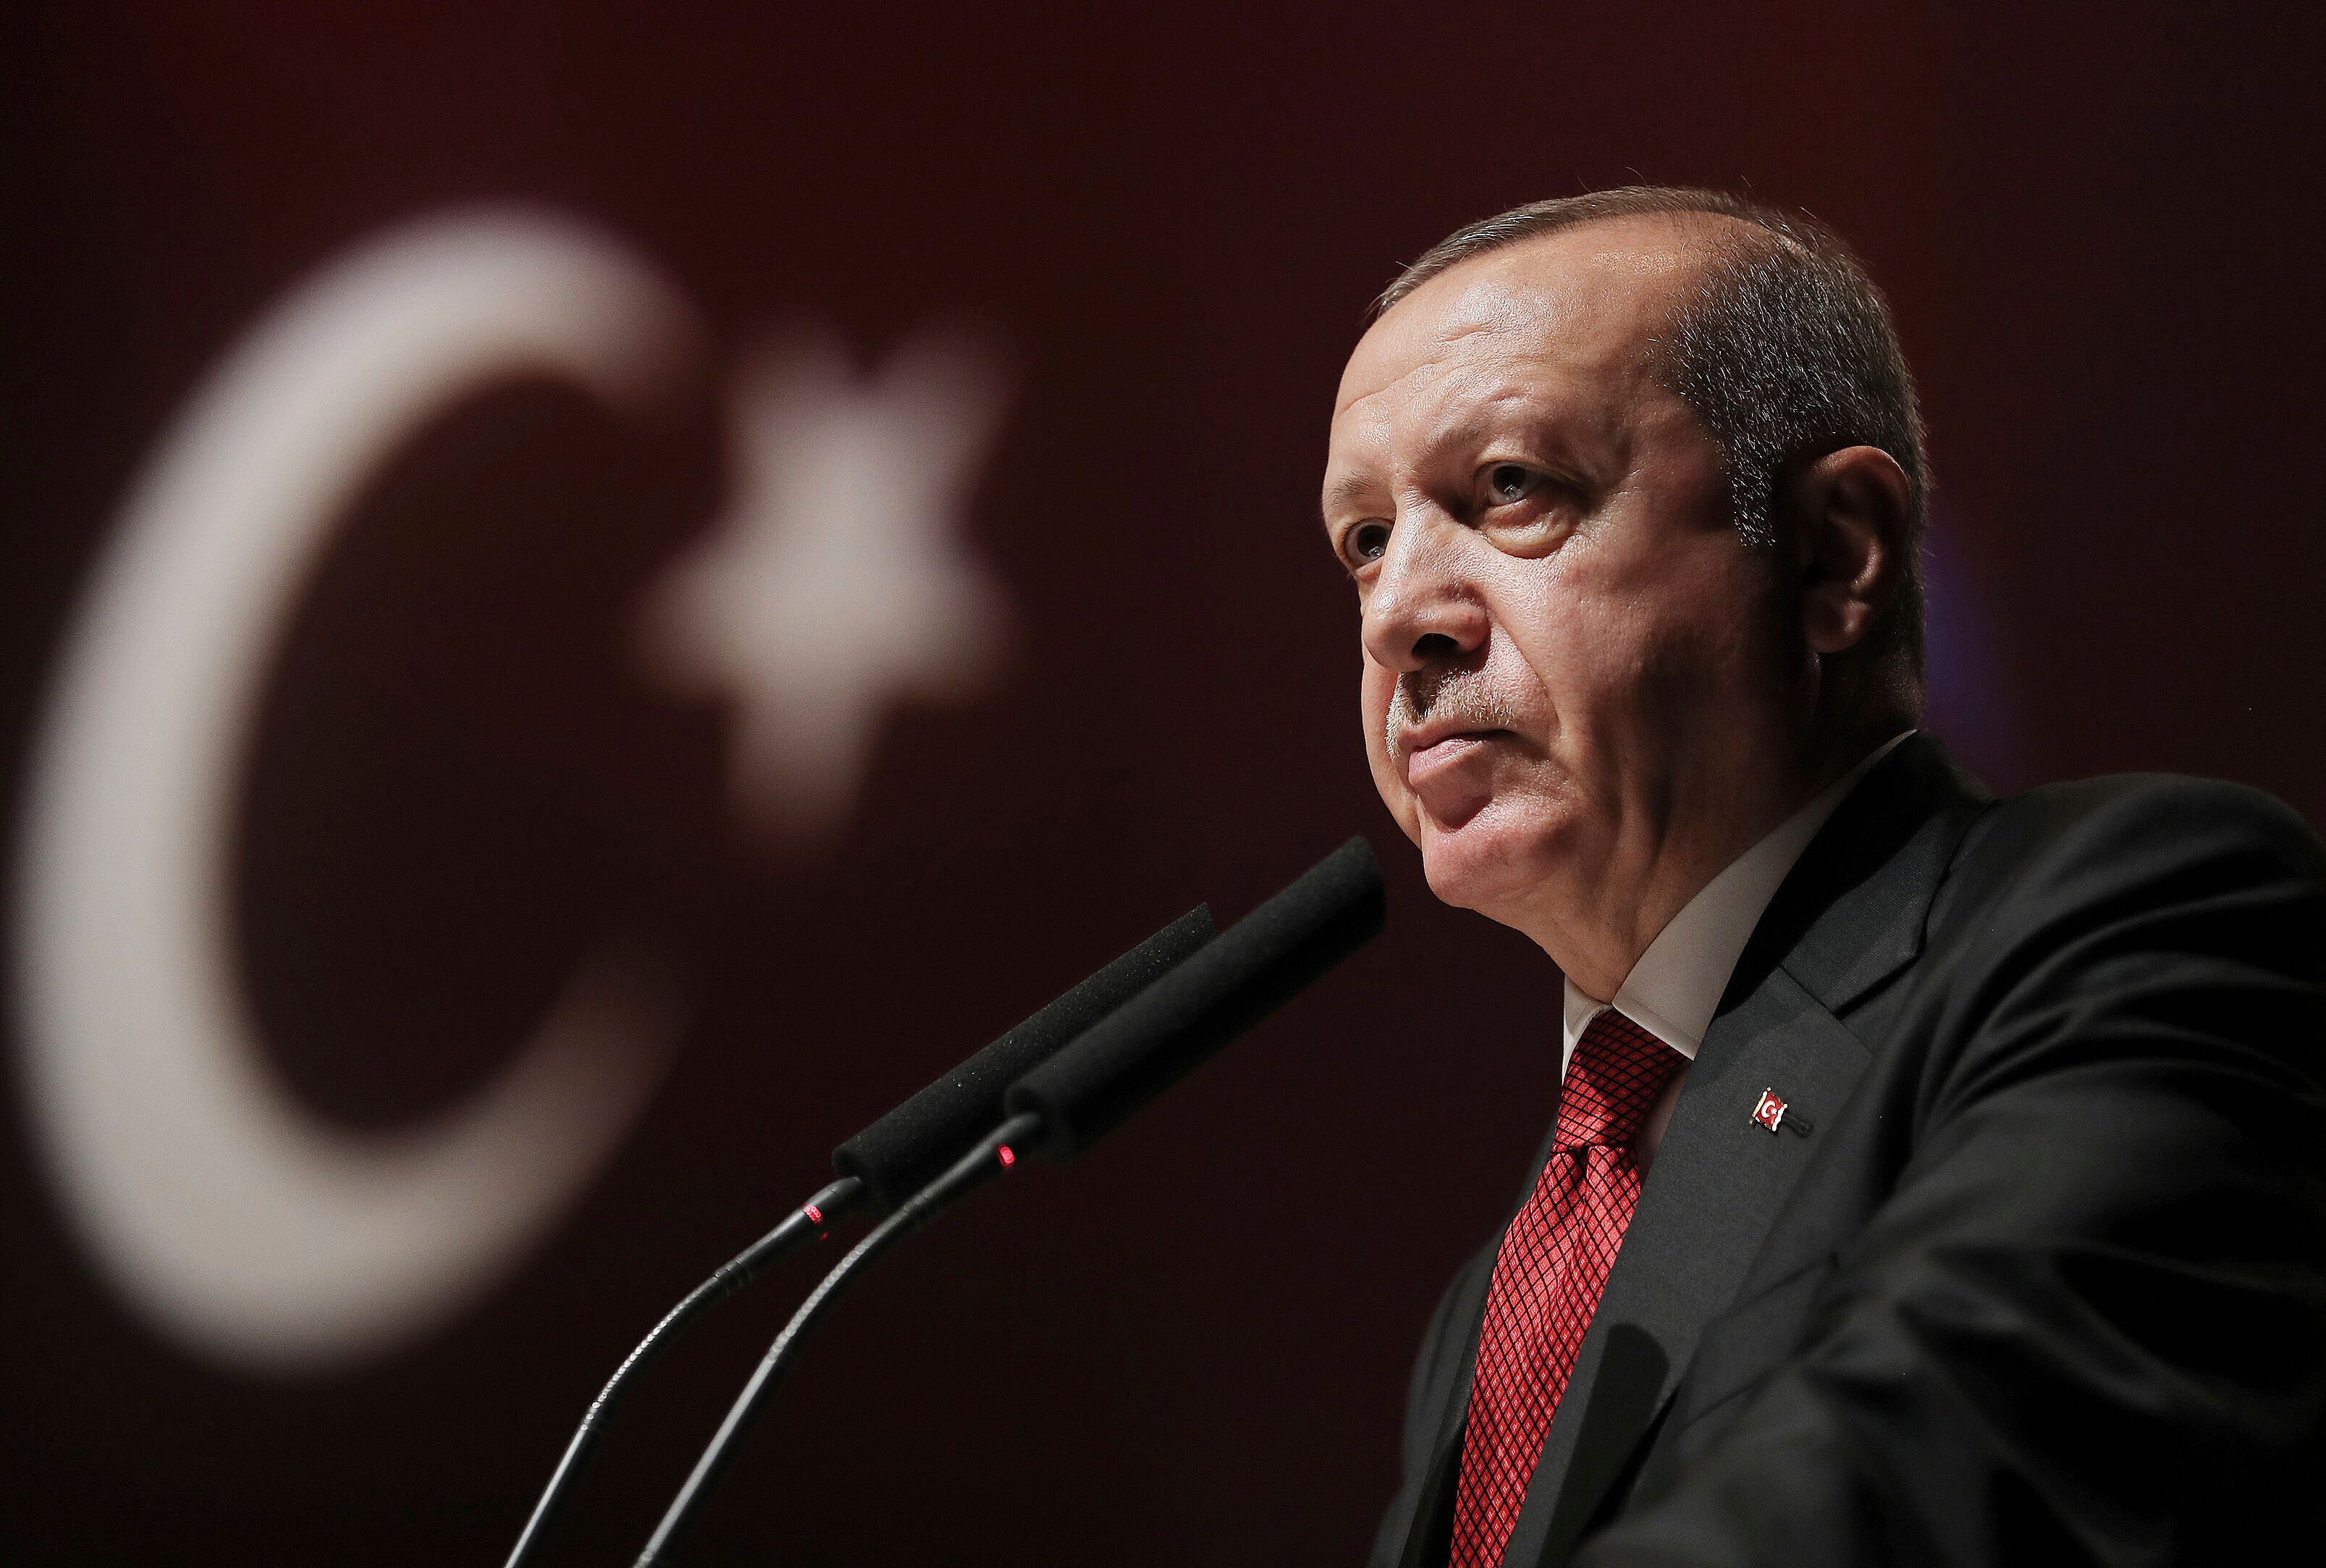 Cumhurbaşkanı Erdoğan'ın adaylığı için YSK'ye başvuru